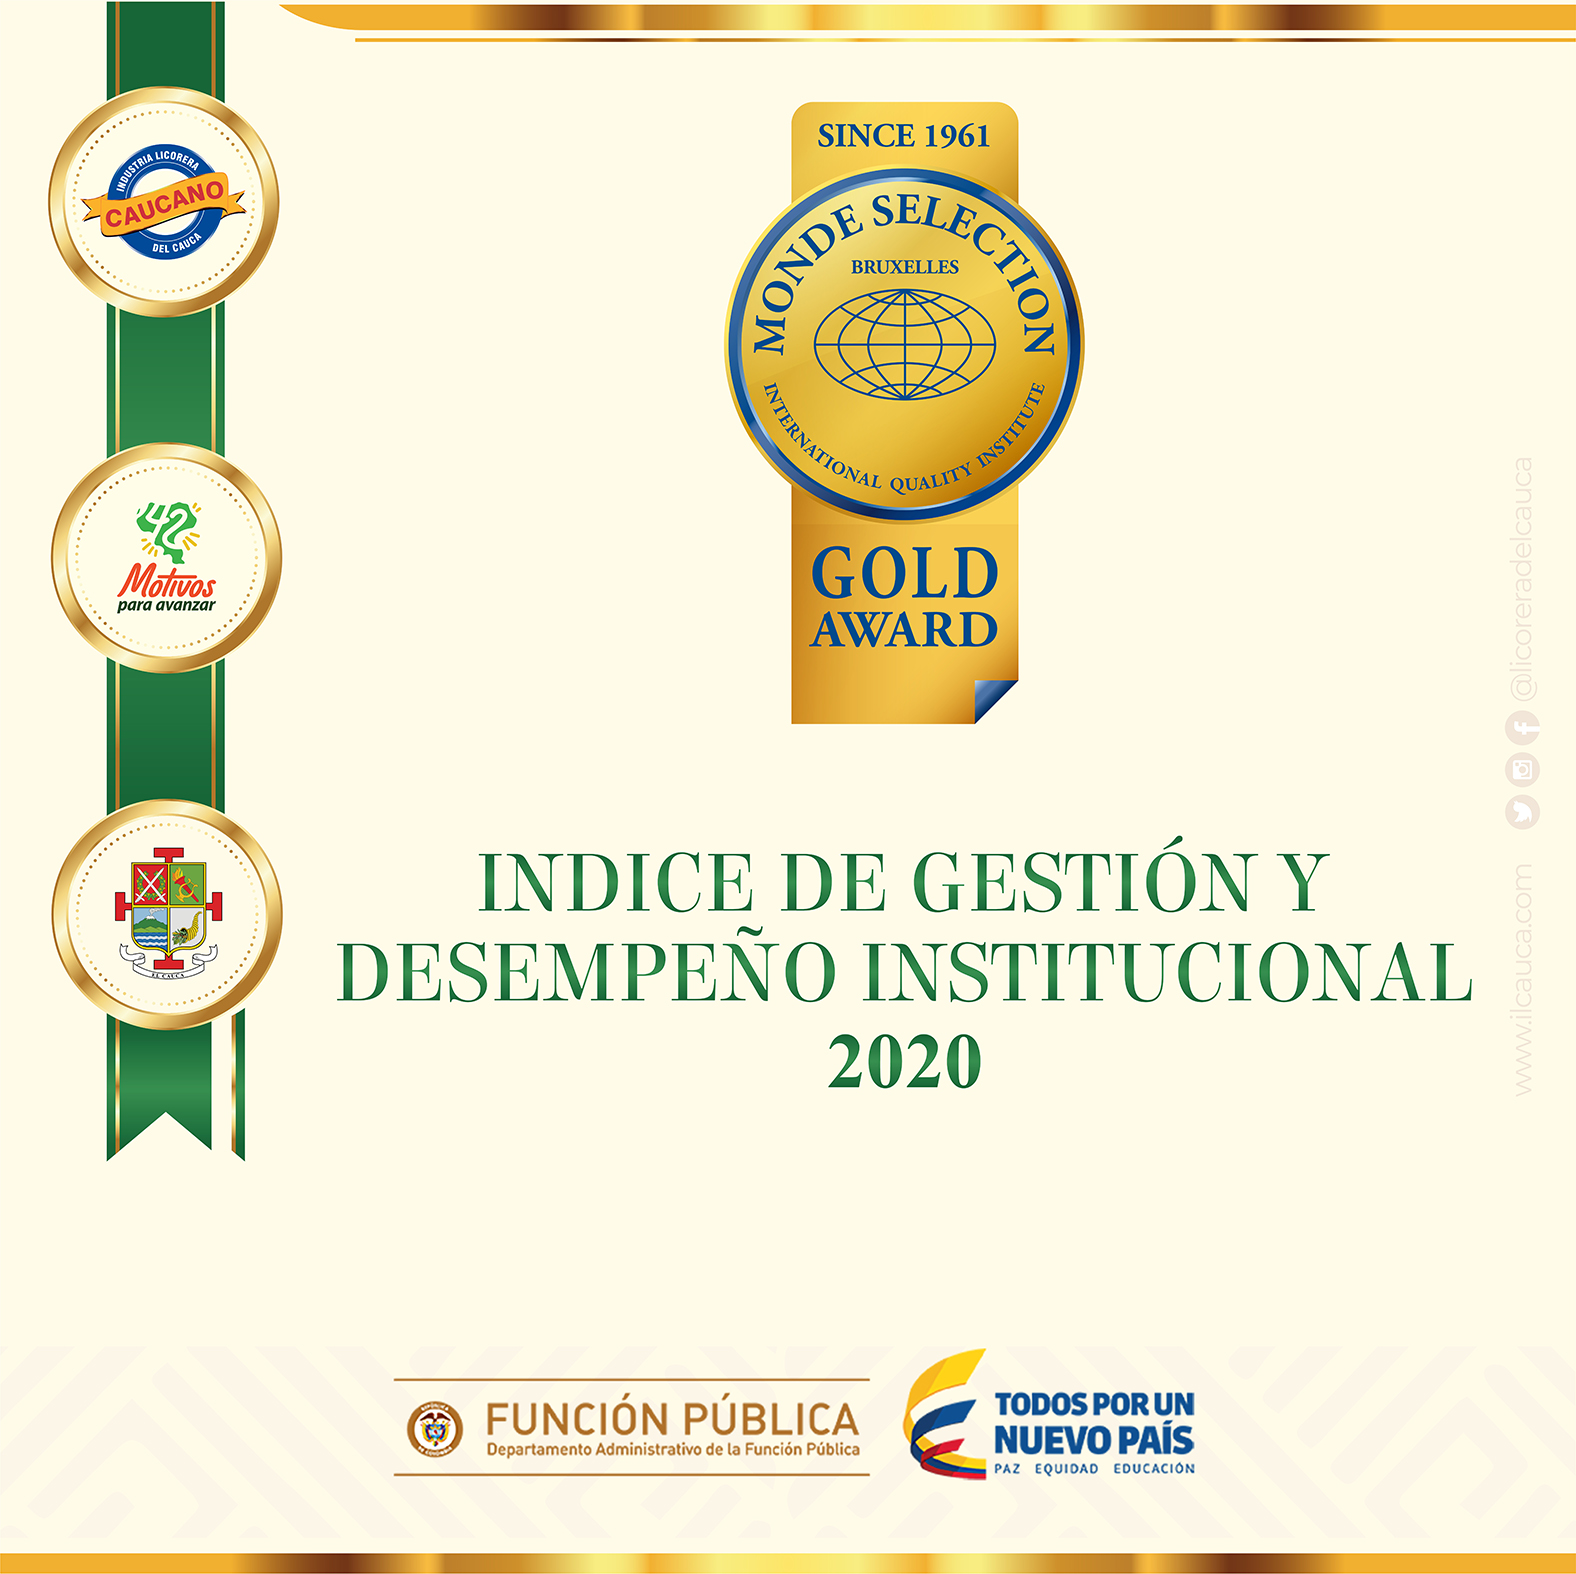 Industria licorera del Cauca ocupa el primer lugar entre las licoreras del país, en el índice General de Desempeño Institucional, vigencia 2020